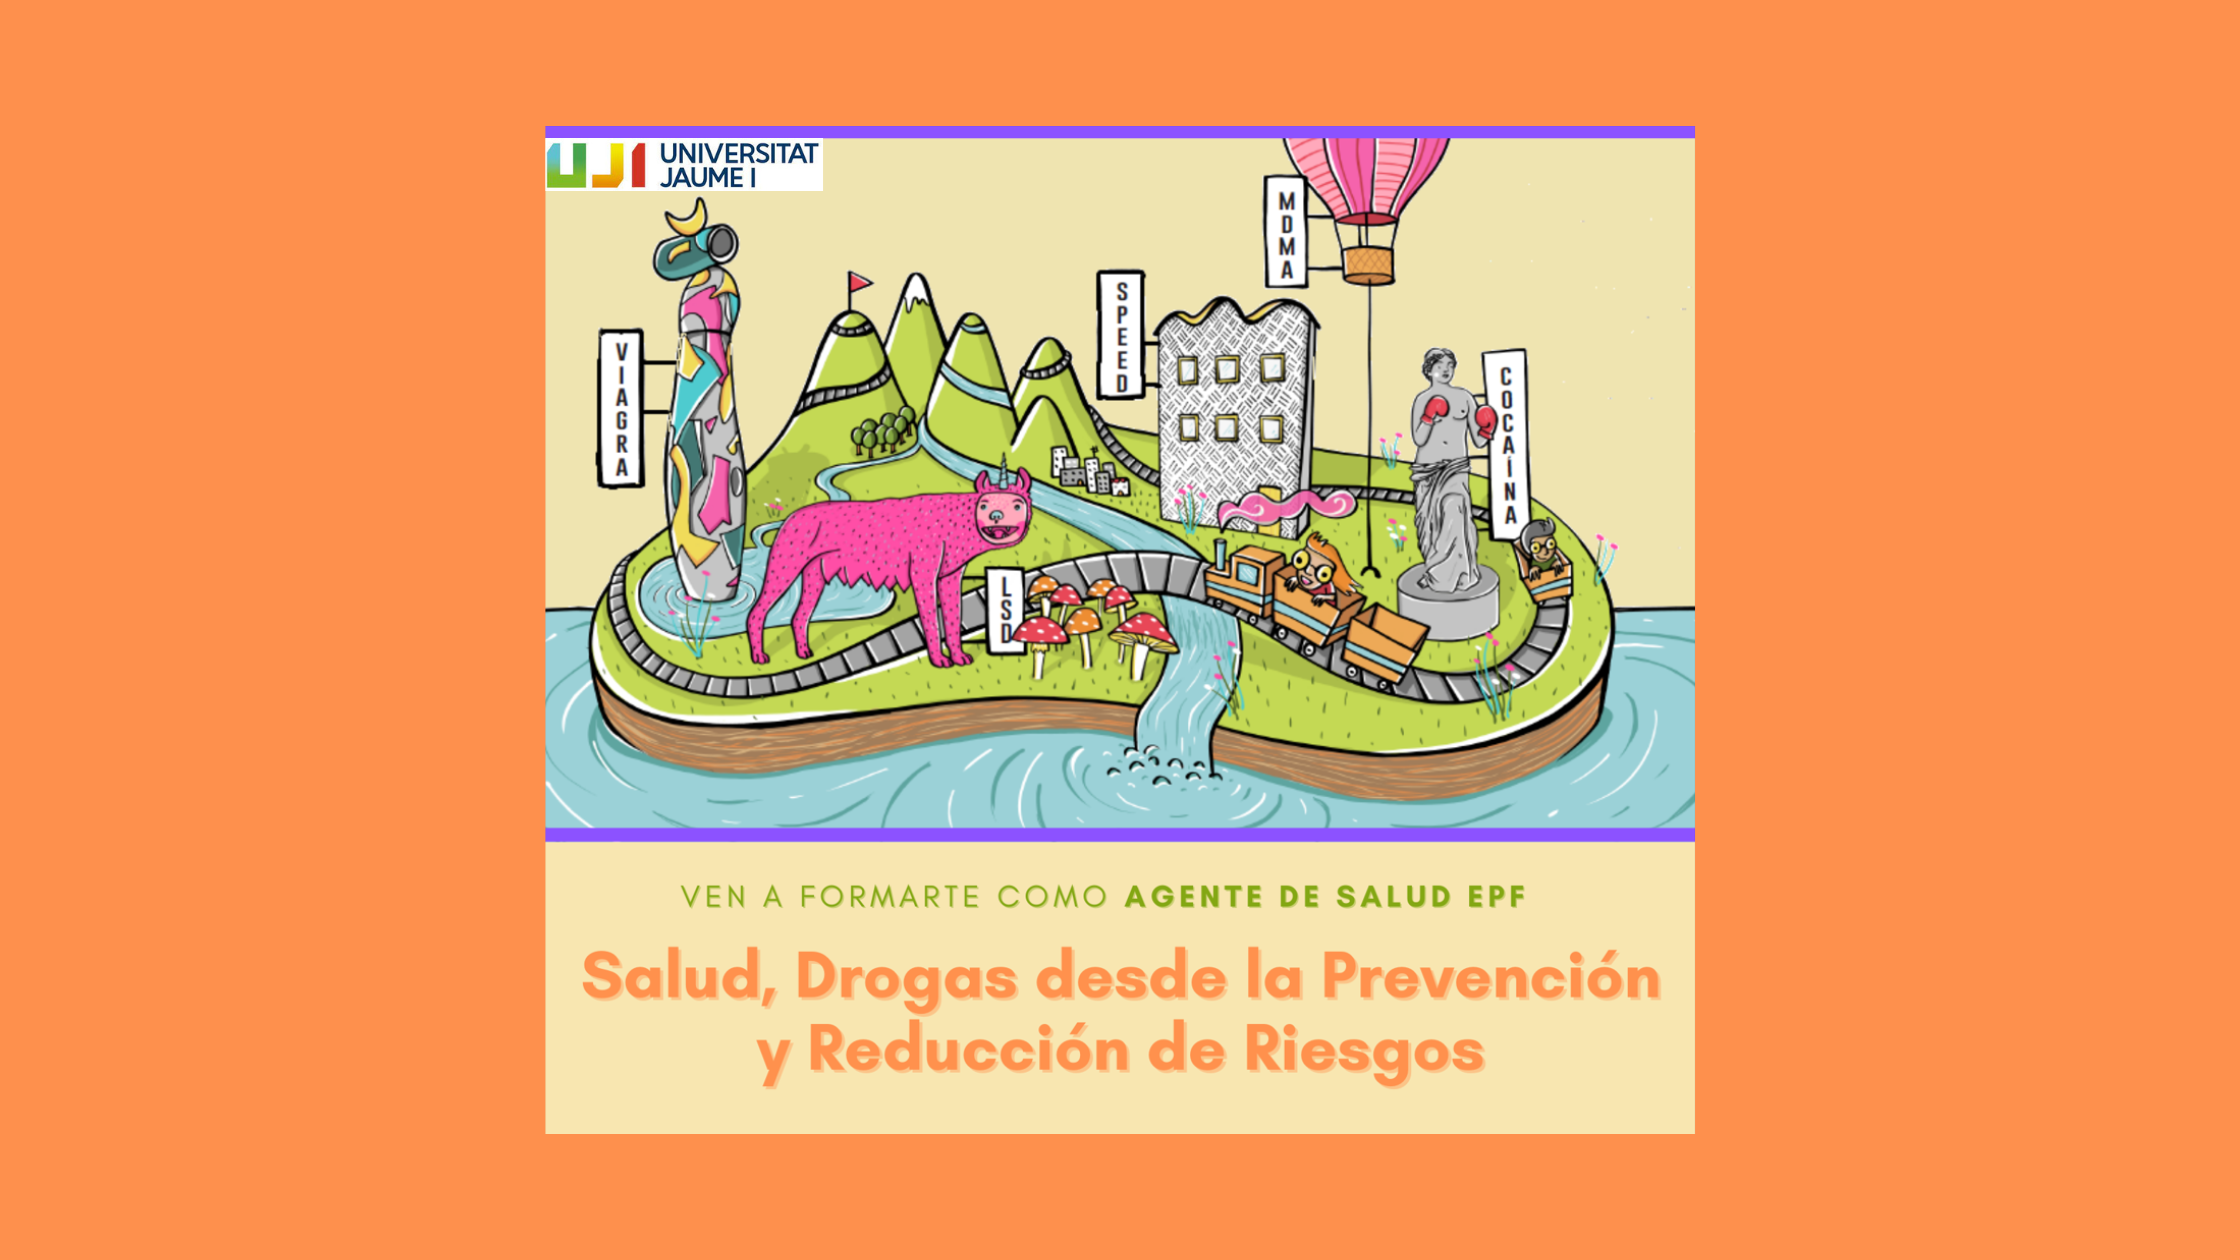 Nova edició del curs EPF “Salut i Drogues des de la prevenció i reducció de riscos” a la Universitat Jaume I de Castelló